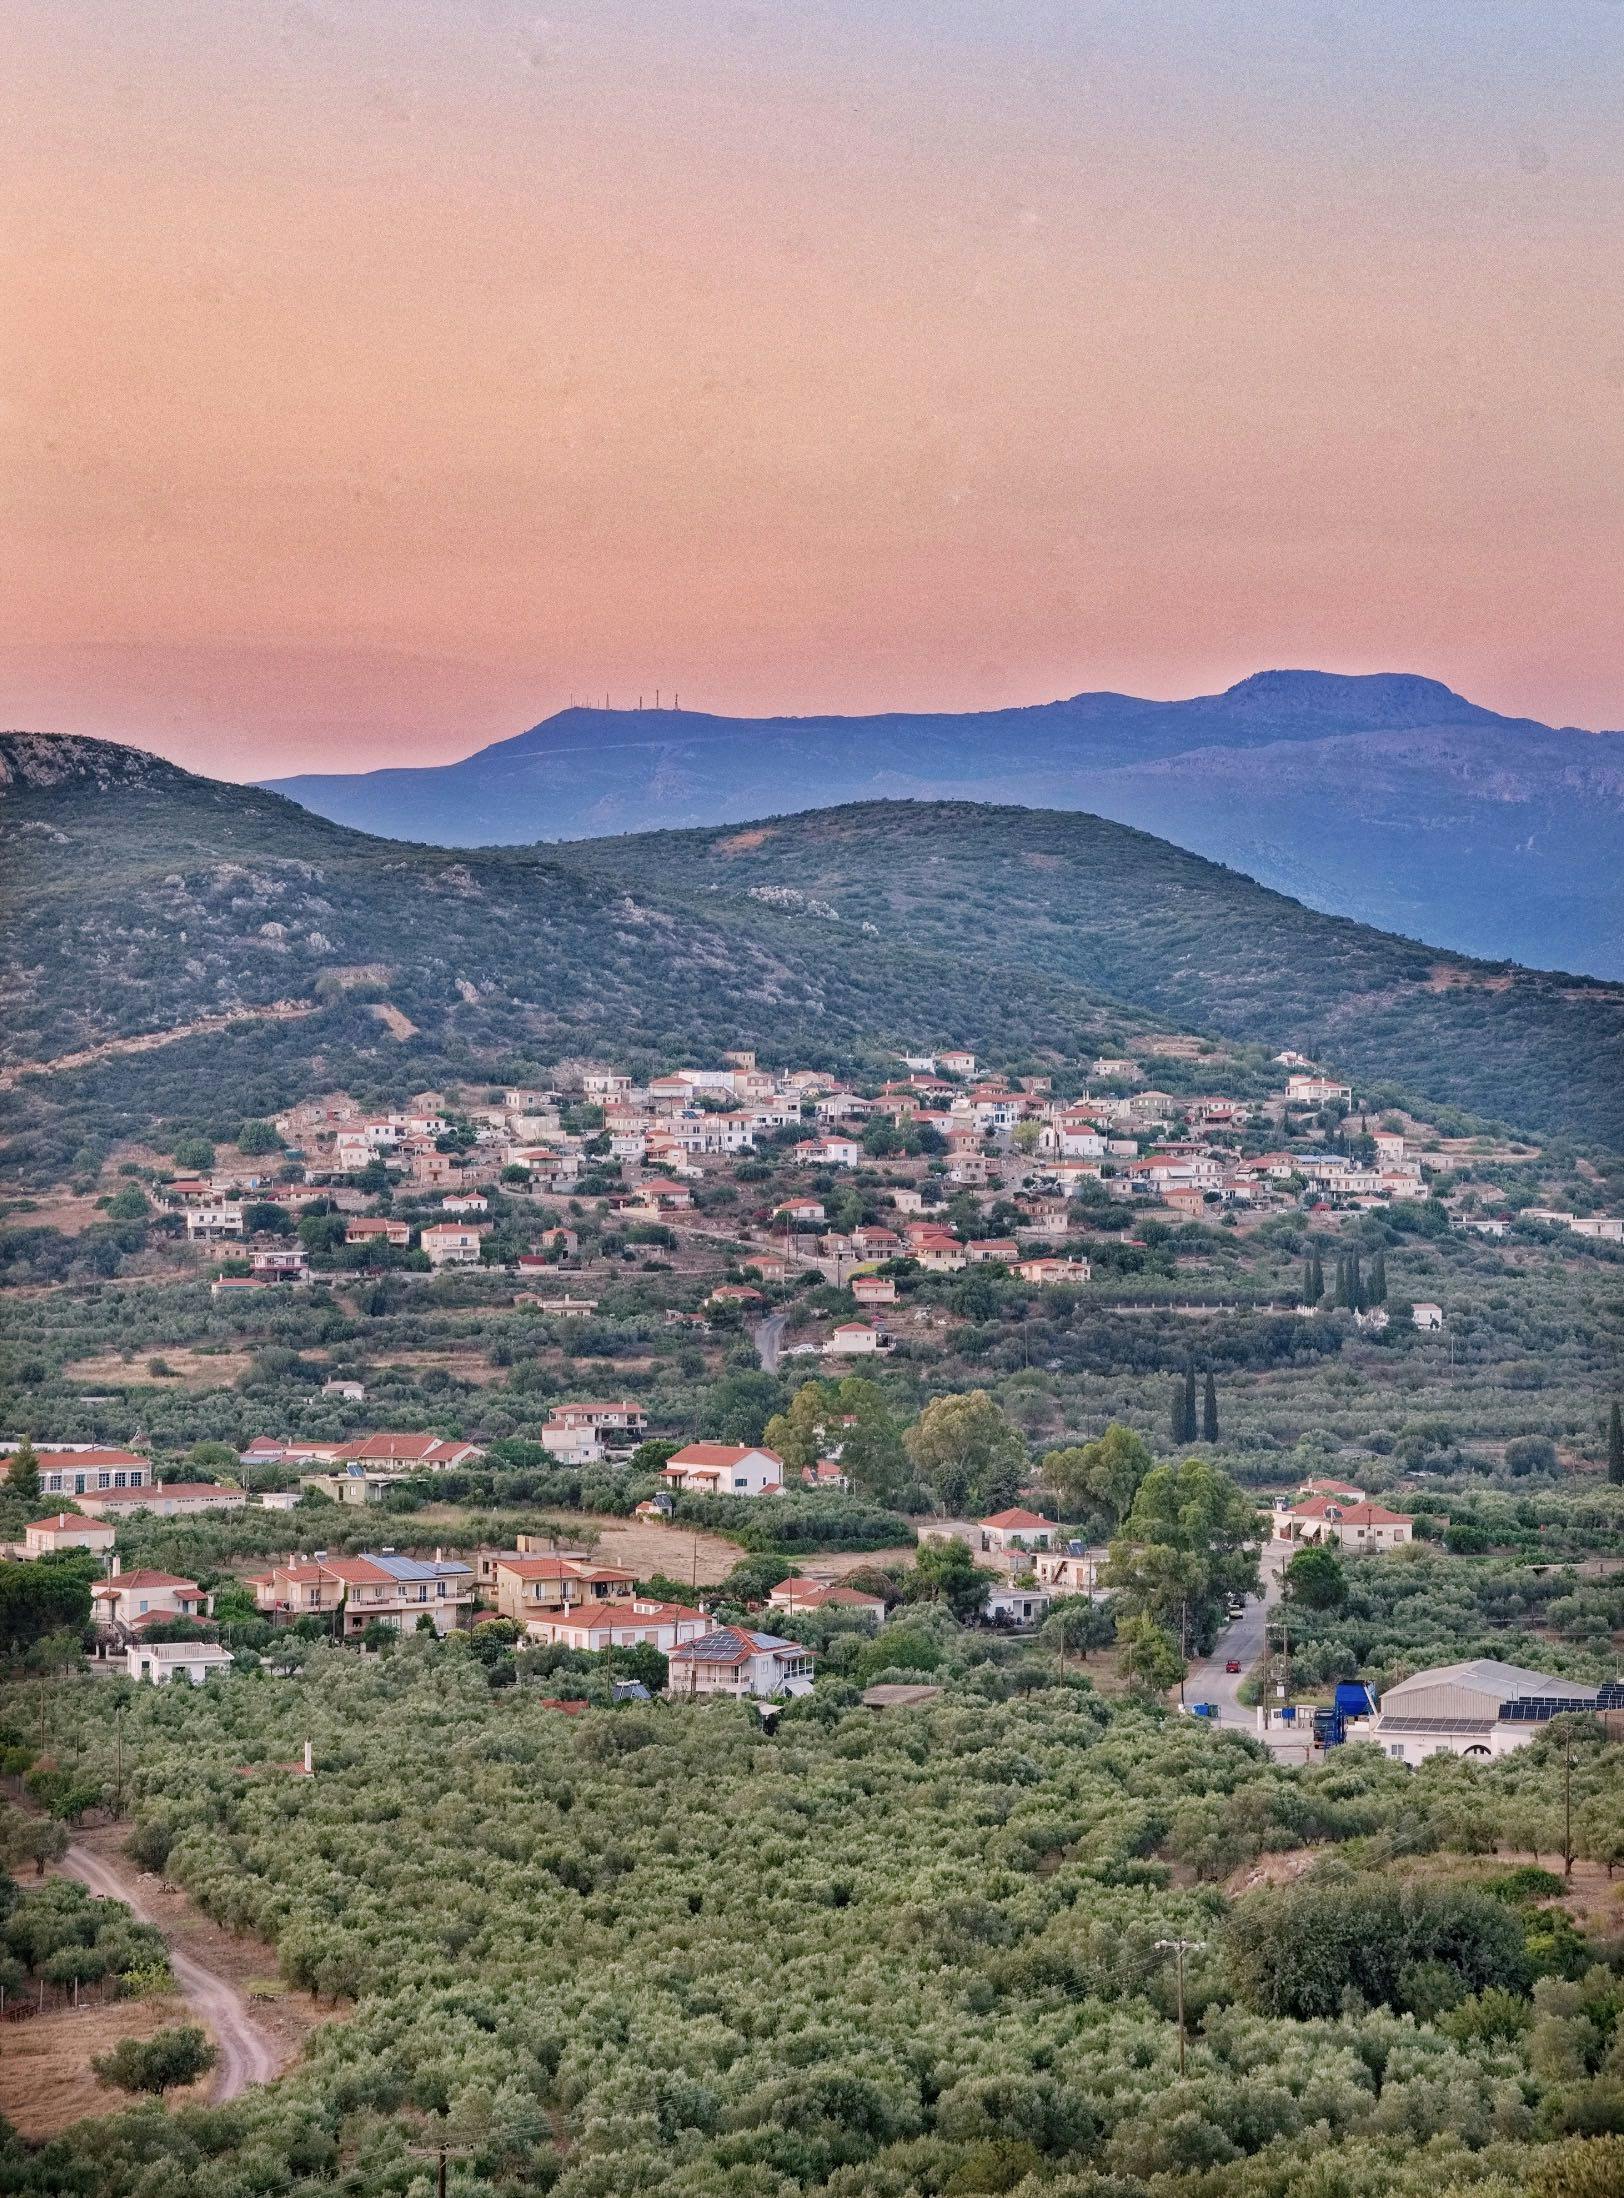 Landscape shot of Greece